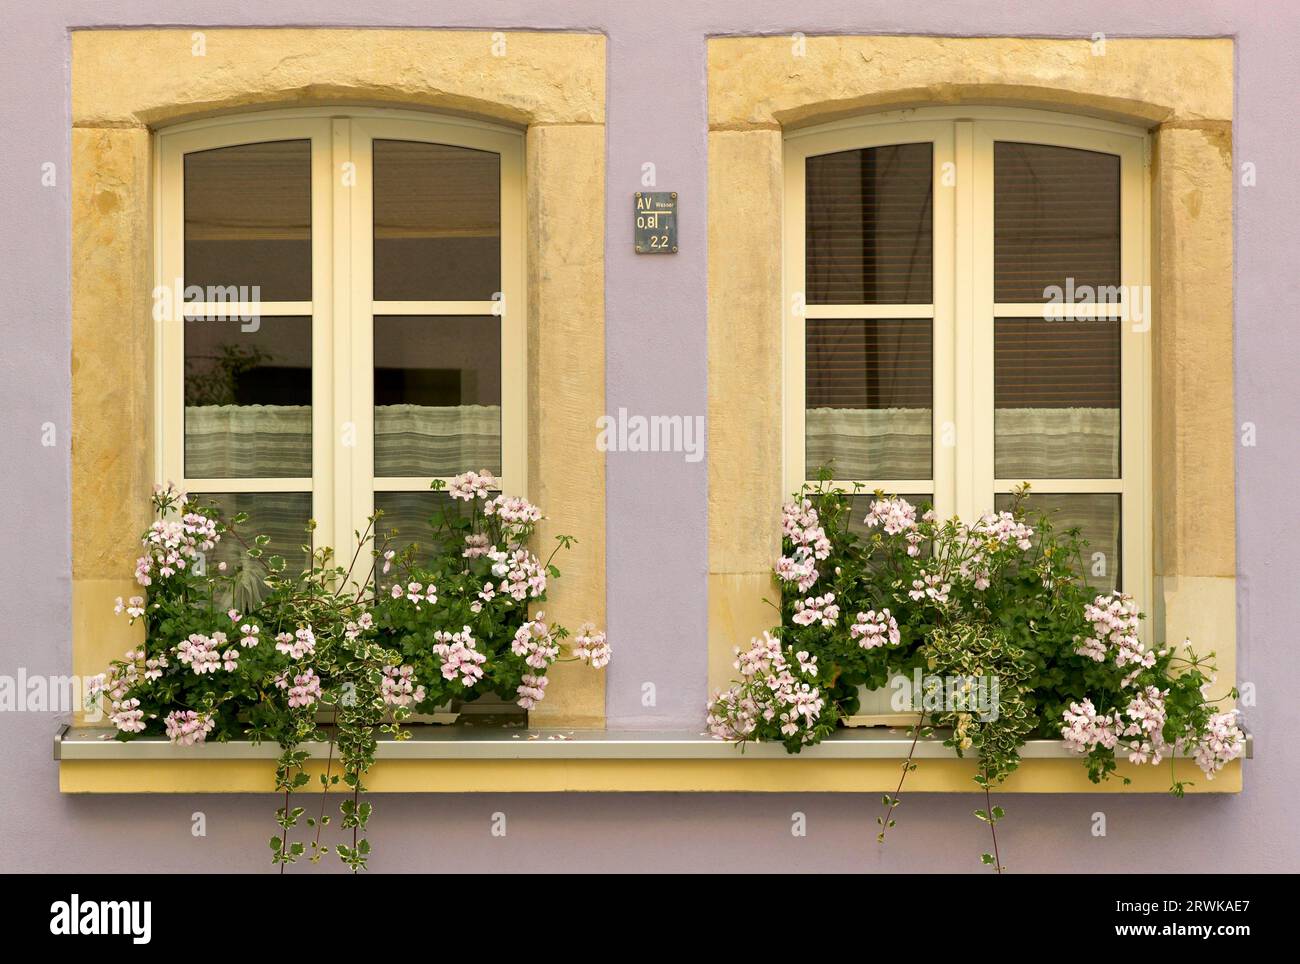 Window facade Stock Photo